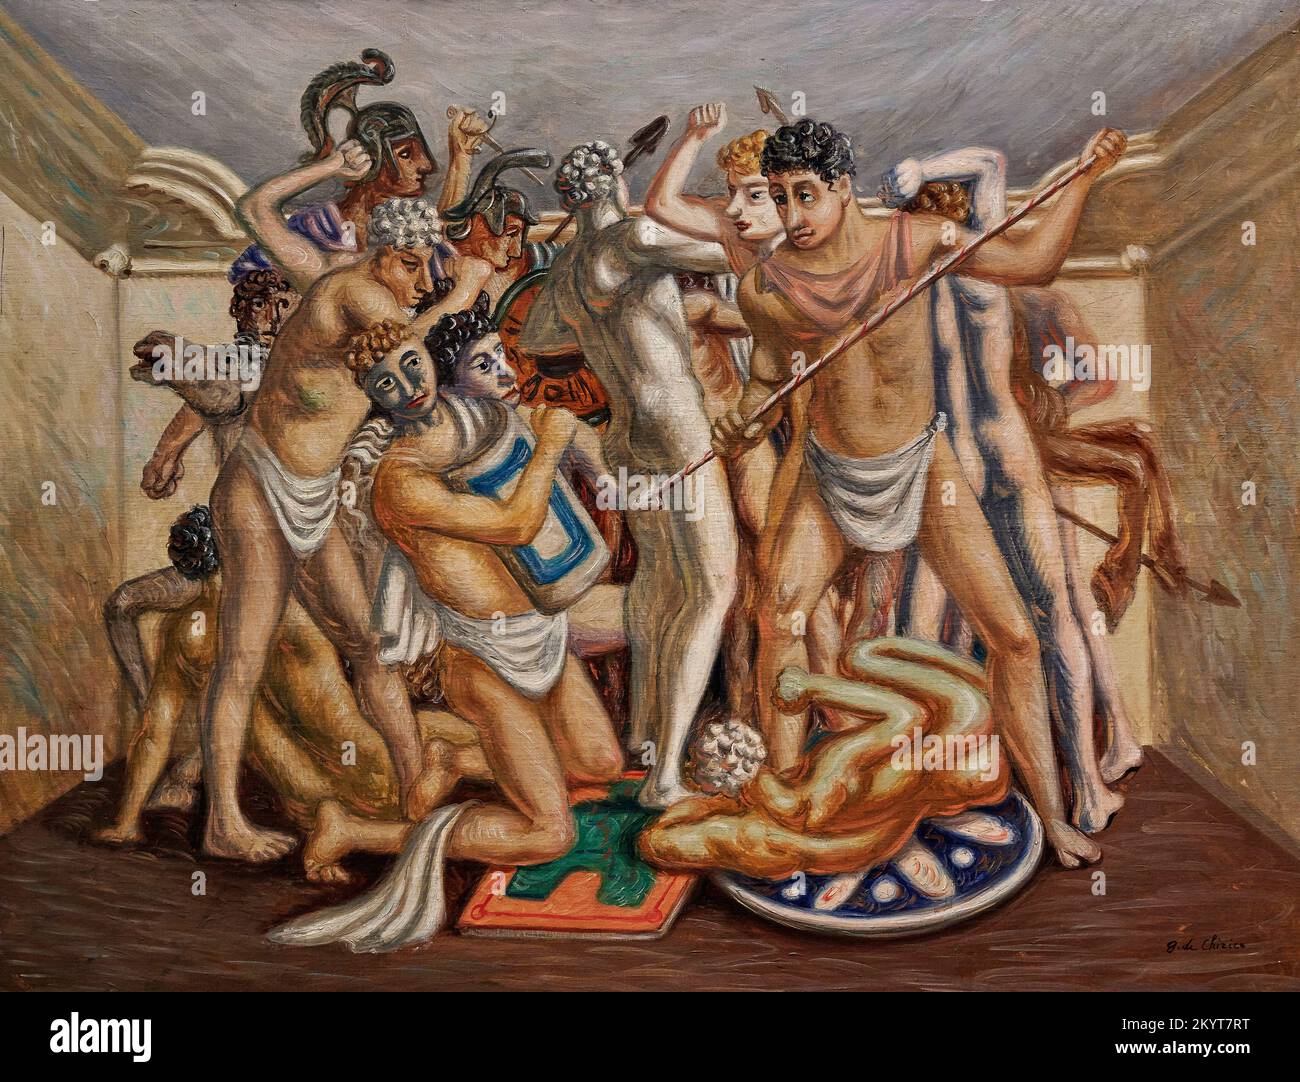 Combattimento ( Gladiatori ) - olio su tela - Giorgio de Chirico - 1929 - Milano, Museo del Novecento Banque D'Images